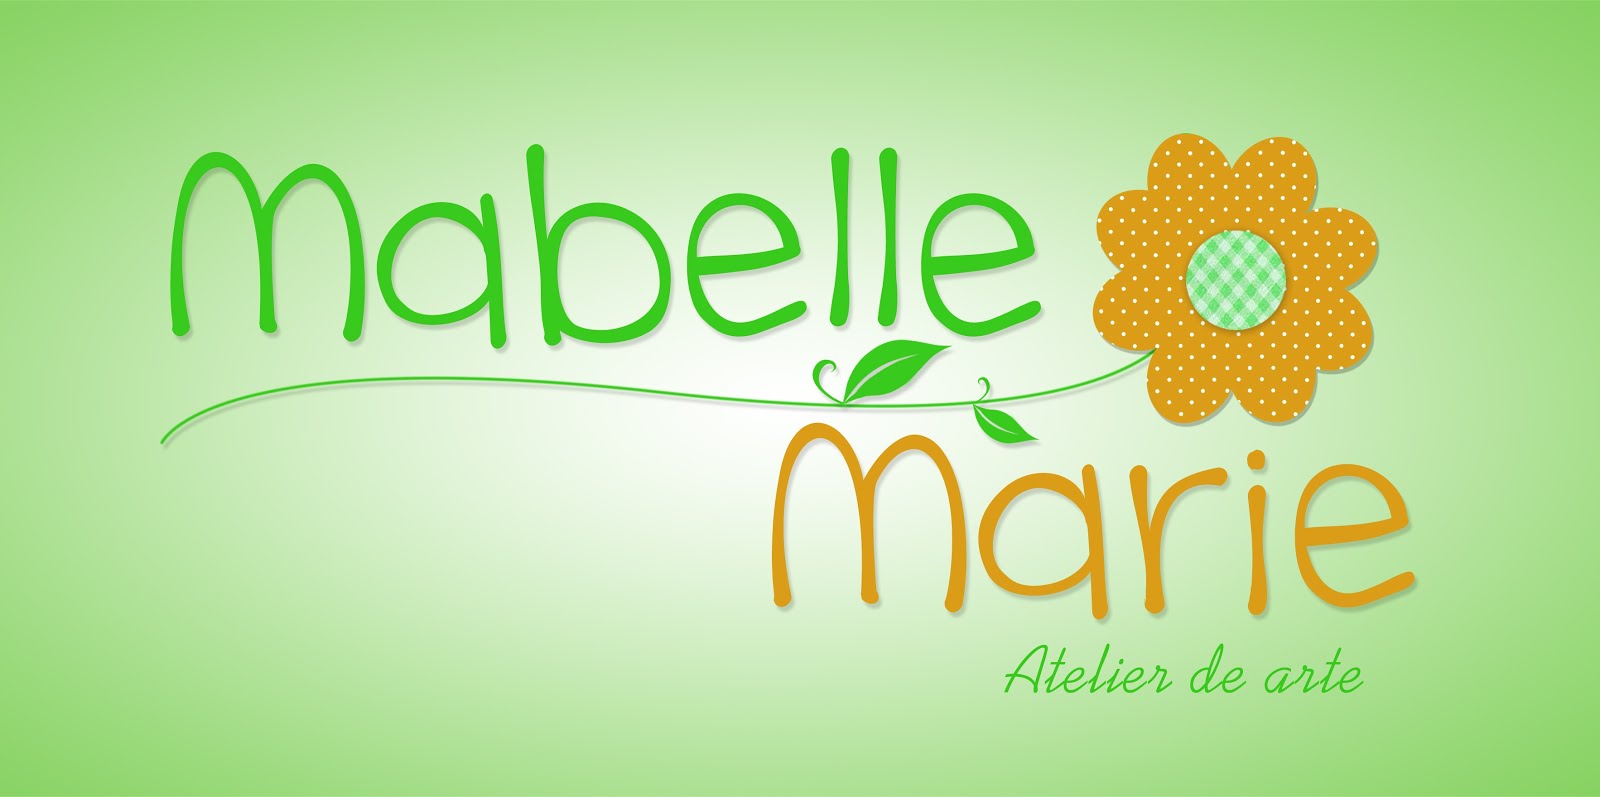 Mabelle Marie Ateliê de Artes